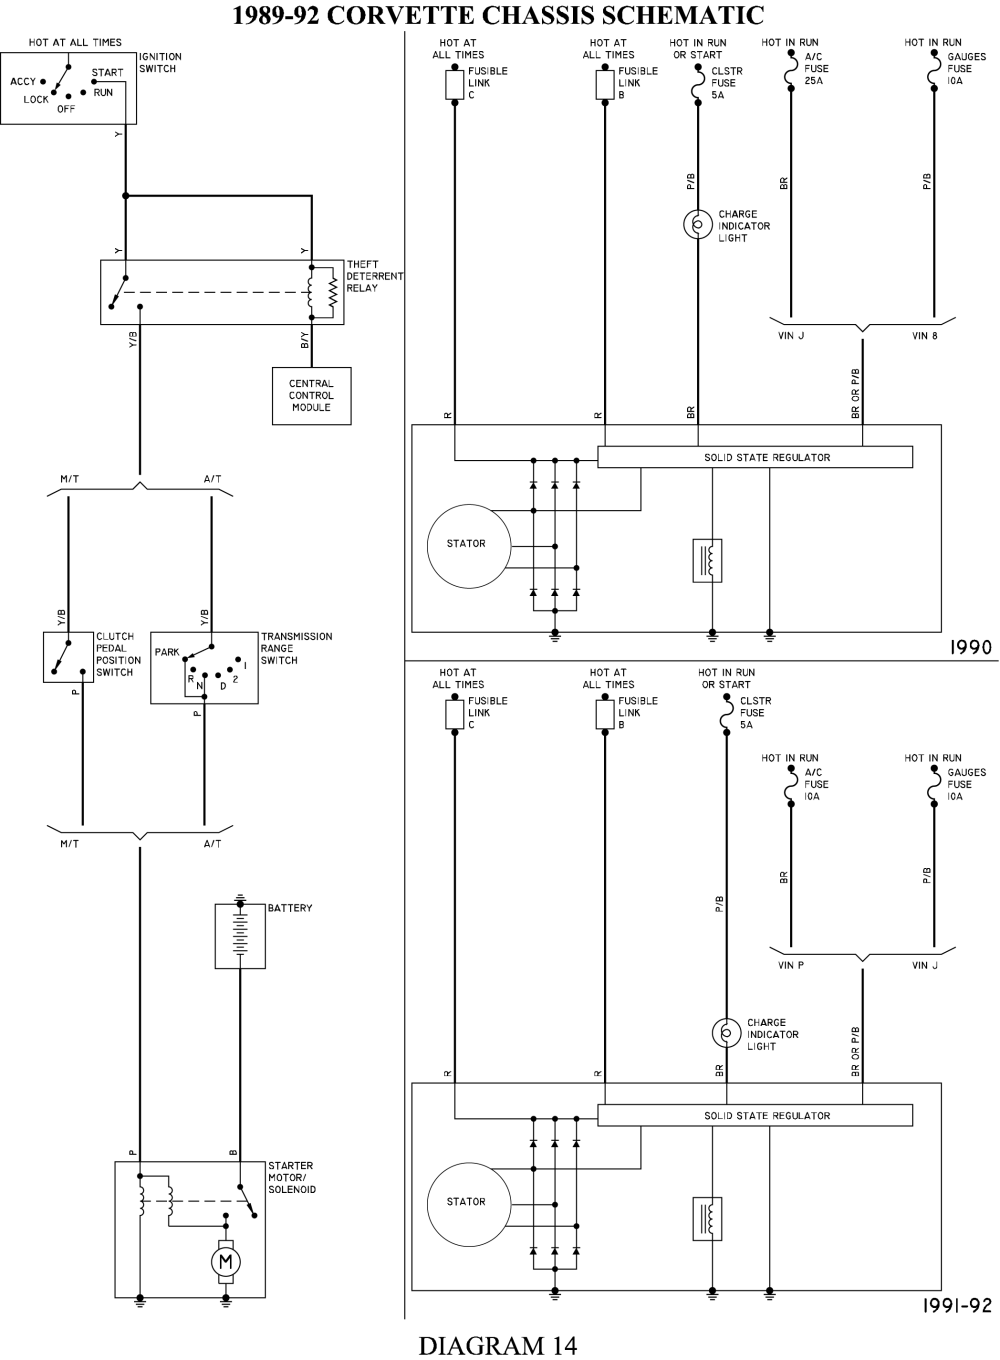 1991 c4 vats bypass wiring diagram